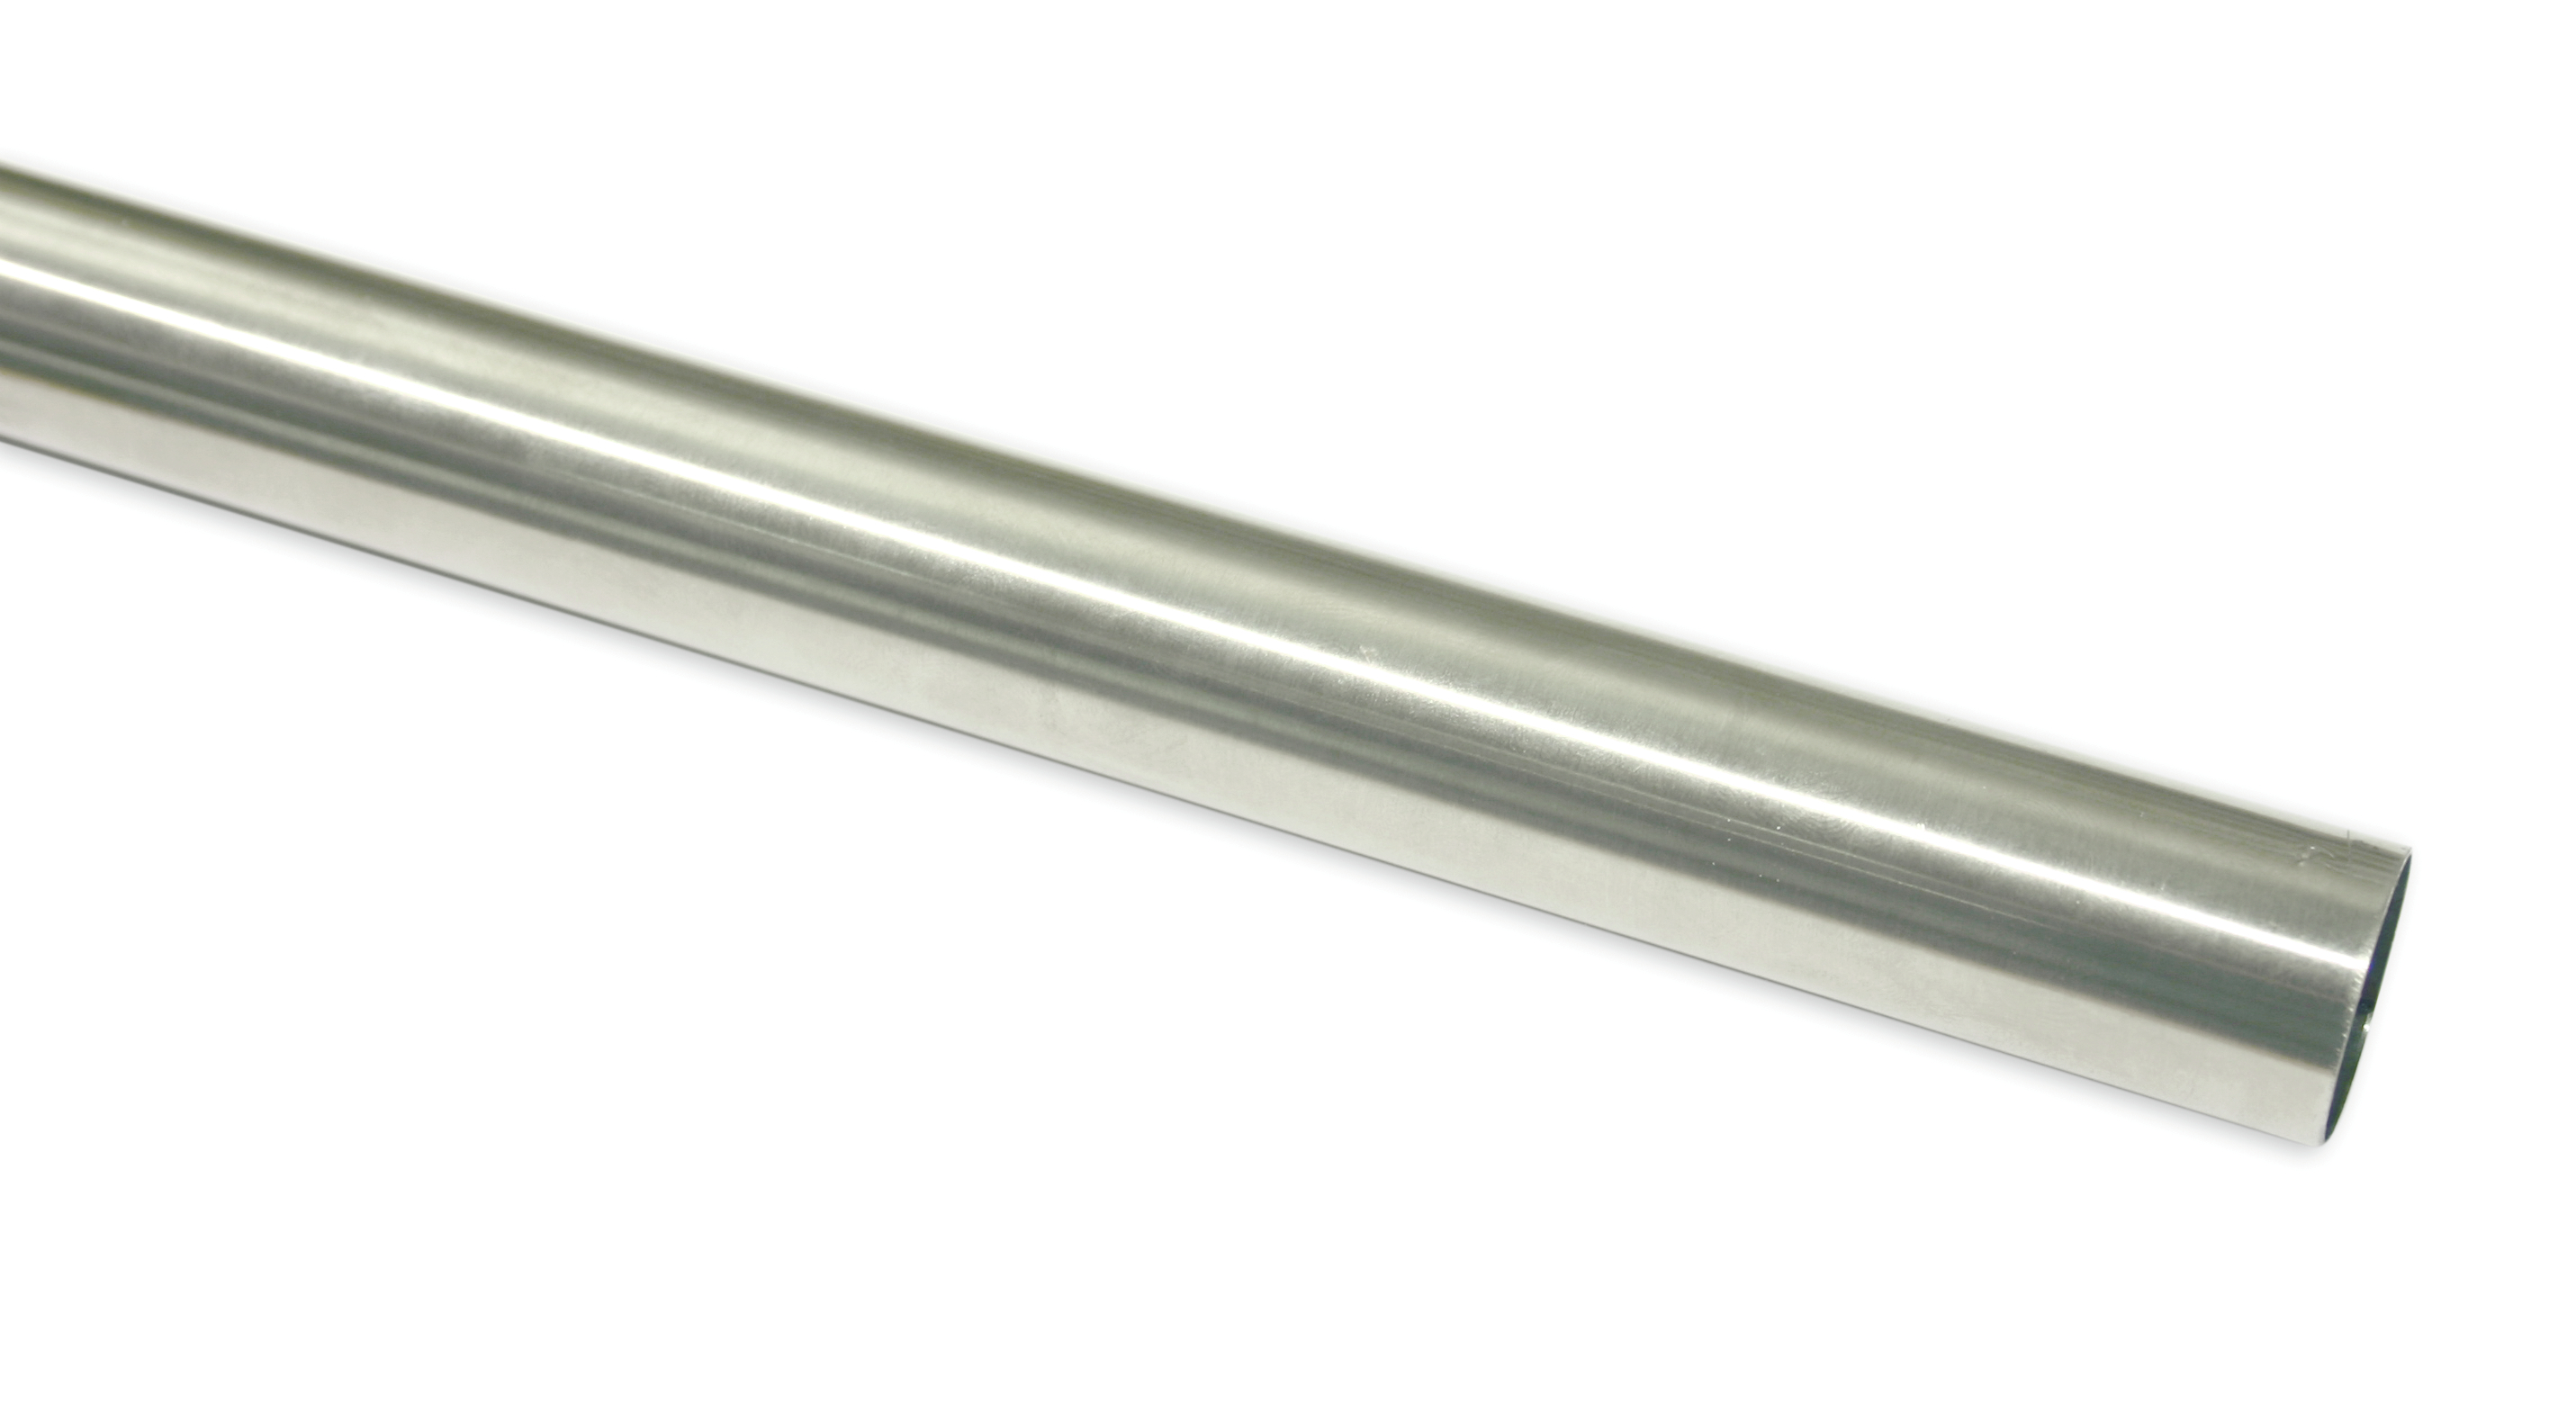 Záclonová tyč Europa 19/200cm, stříbrná satén (Kov, od délky tyče 200cm doporučujeme použít třetí nosník.)